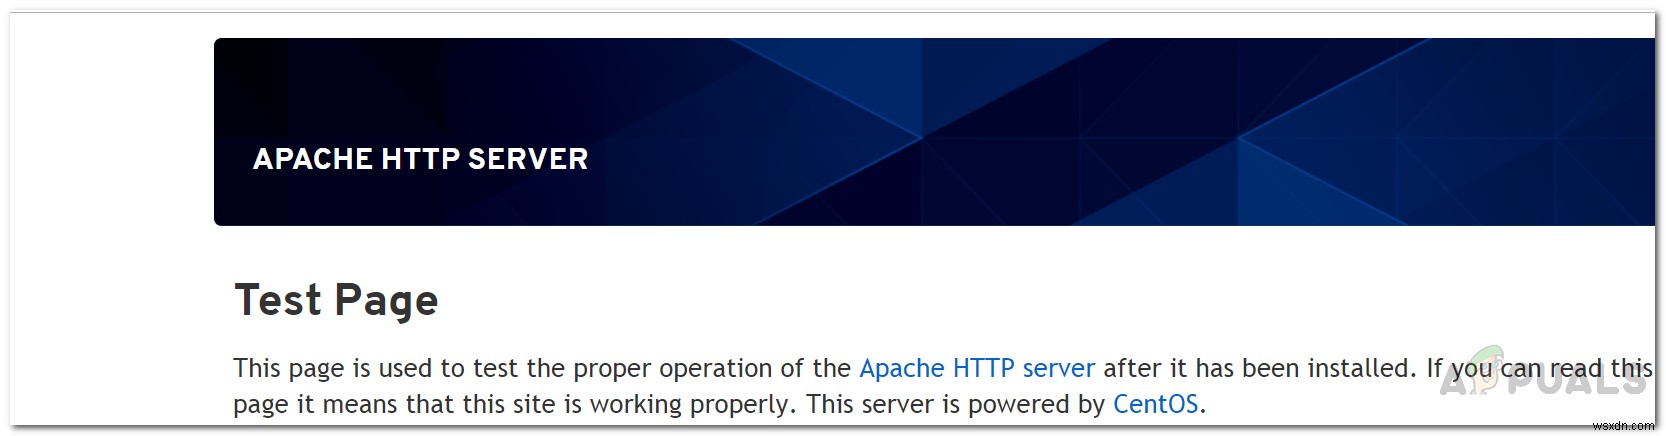 วิธีกำหนดค่า WebServer (IIS) หรือ Apache บน  Elastic Compute Service  ของ Alibaba Cloud 